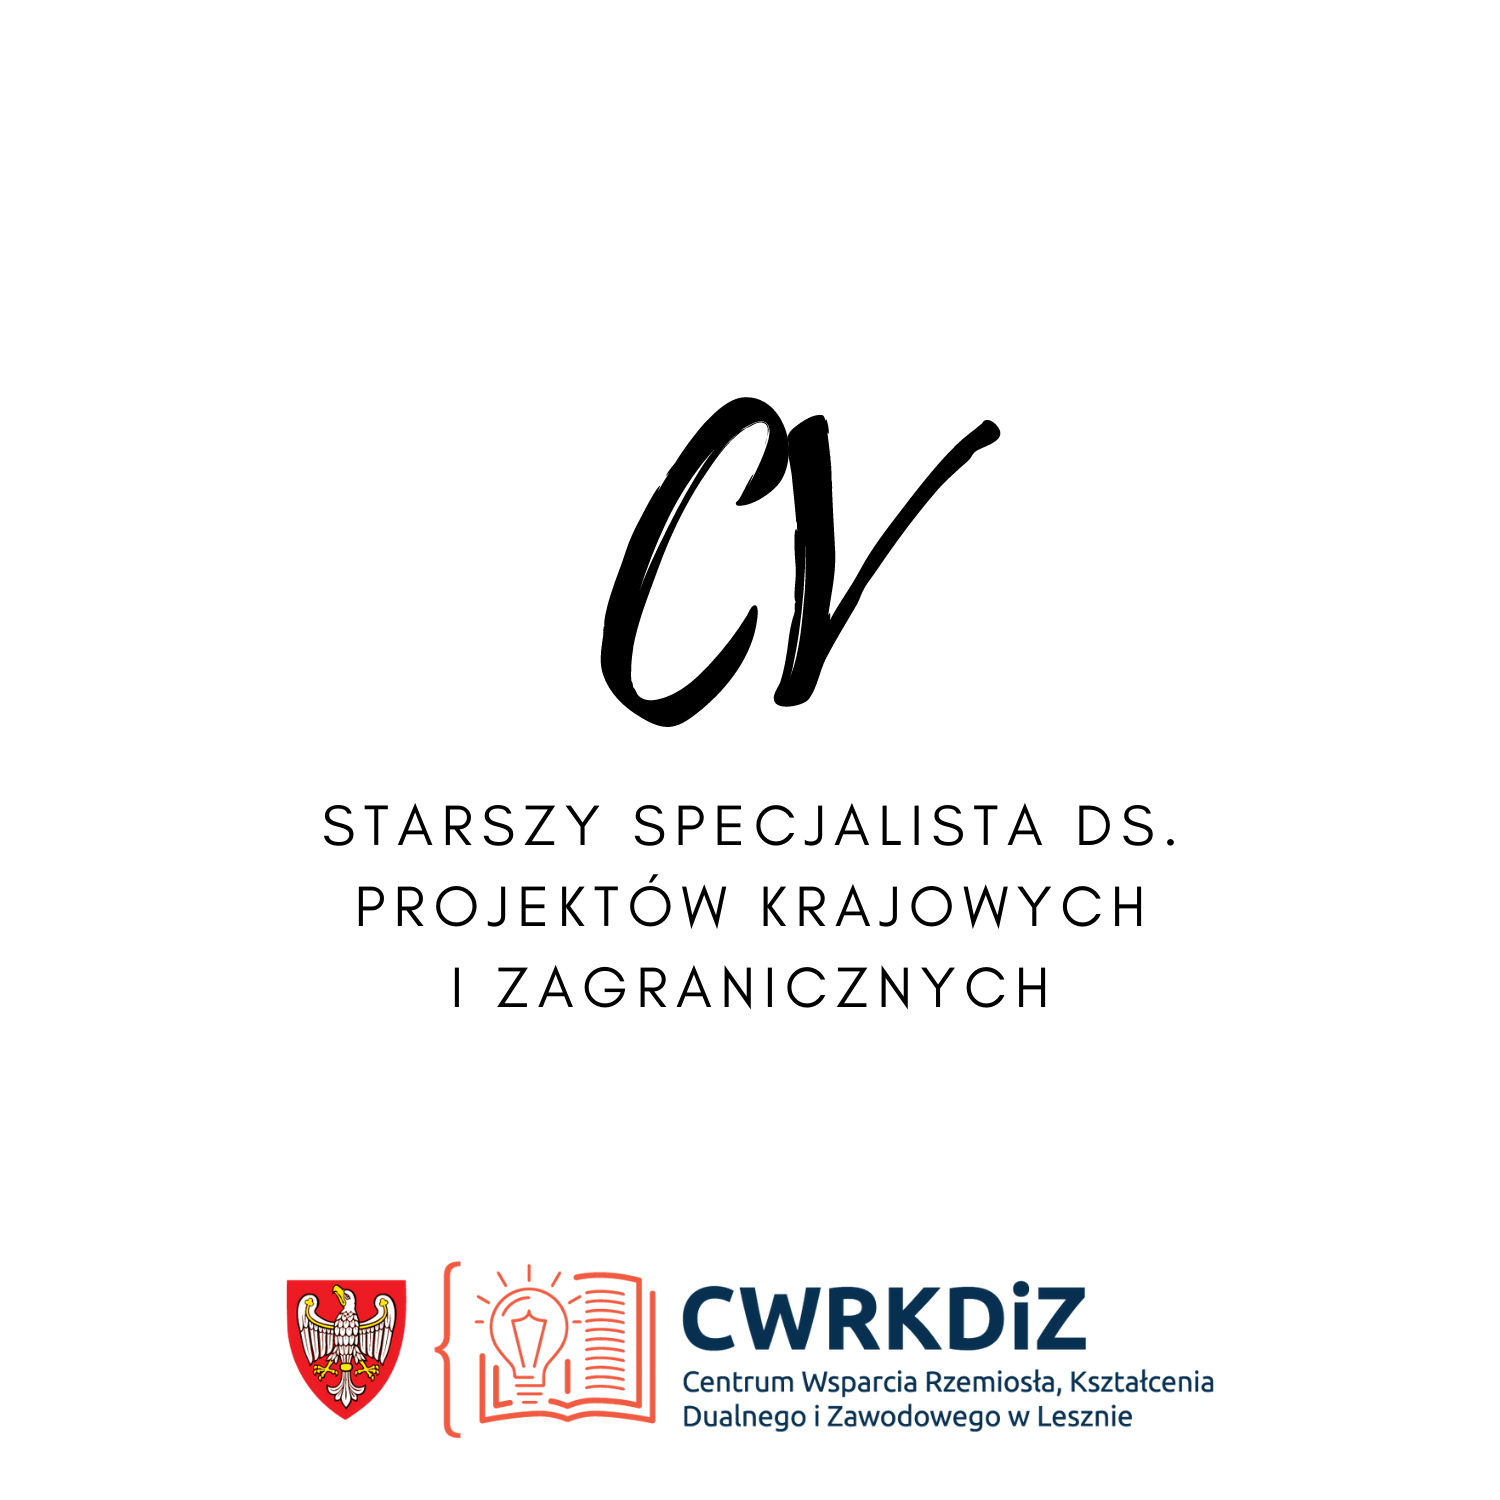 Grafika przedstawia napis "CV a pod nim dopis "starszy specjalista ds. projektów krajowych i zagranicznych" oraz logo Centrum Wsparcia Rzemiosła, Kształcenia Dualnego i Zawodowego w Lesznie.